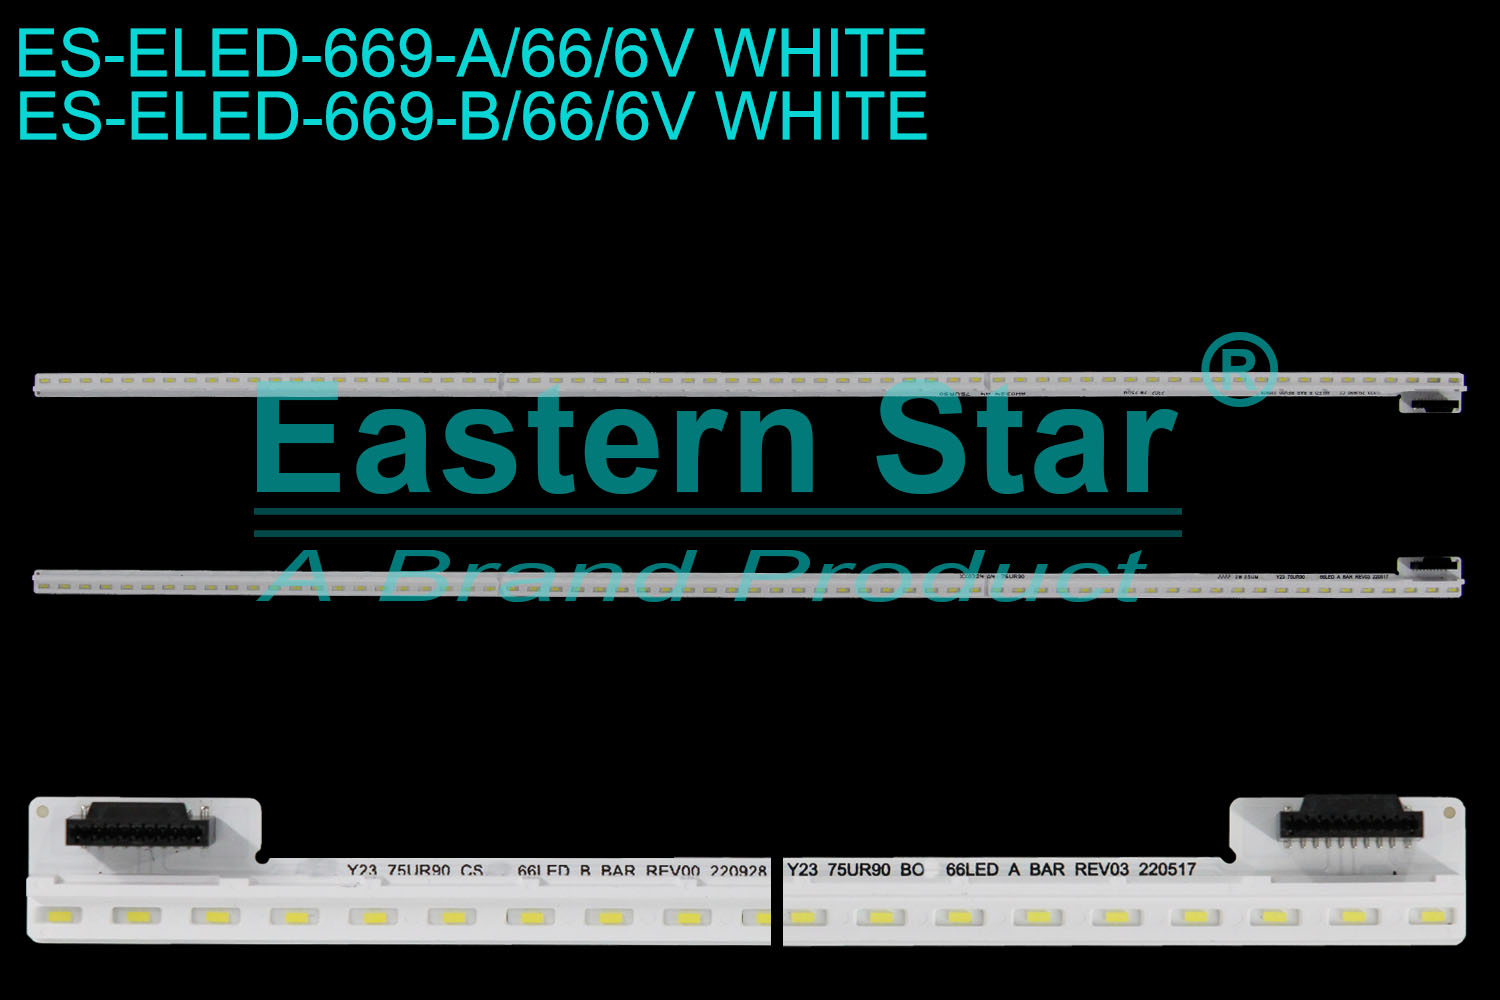 ES-ELED-669 ELED/EDGE TV backlight use for 75'' Lg A: Y23_75UR90_BOE_66LED_A BAR_REV03_220517 2222 2W 25UM XX0324 A4 75UR30 B: Y23_75UR90_CSOT_66LED_B BAR_REV00_220928 2302 2W 25UM AW0324 A4 75UR90 LED STRIPS(/)